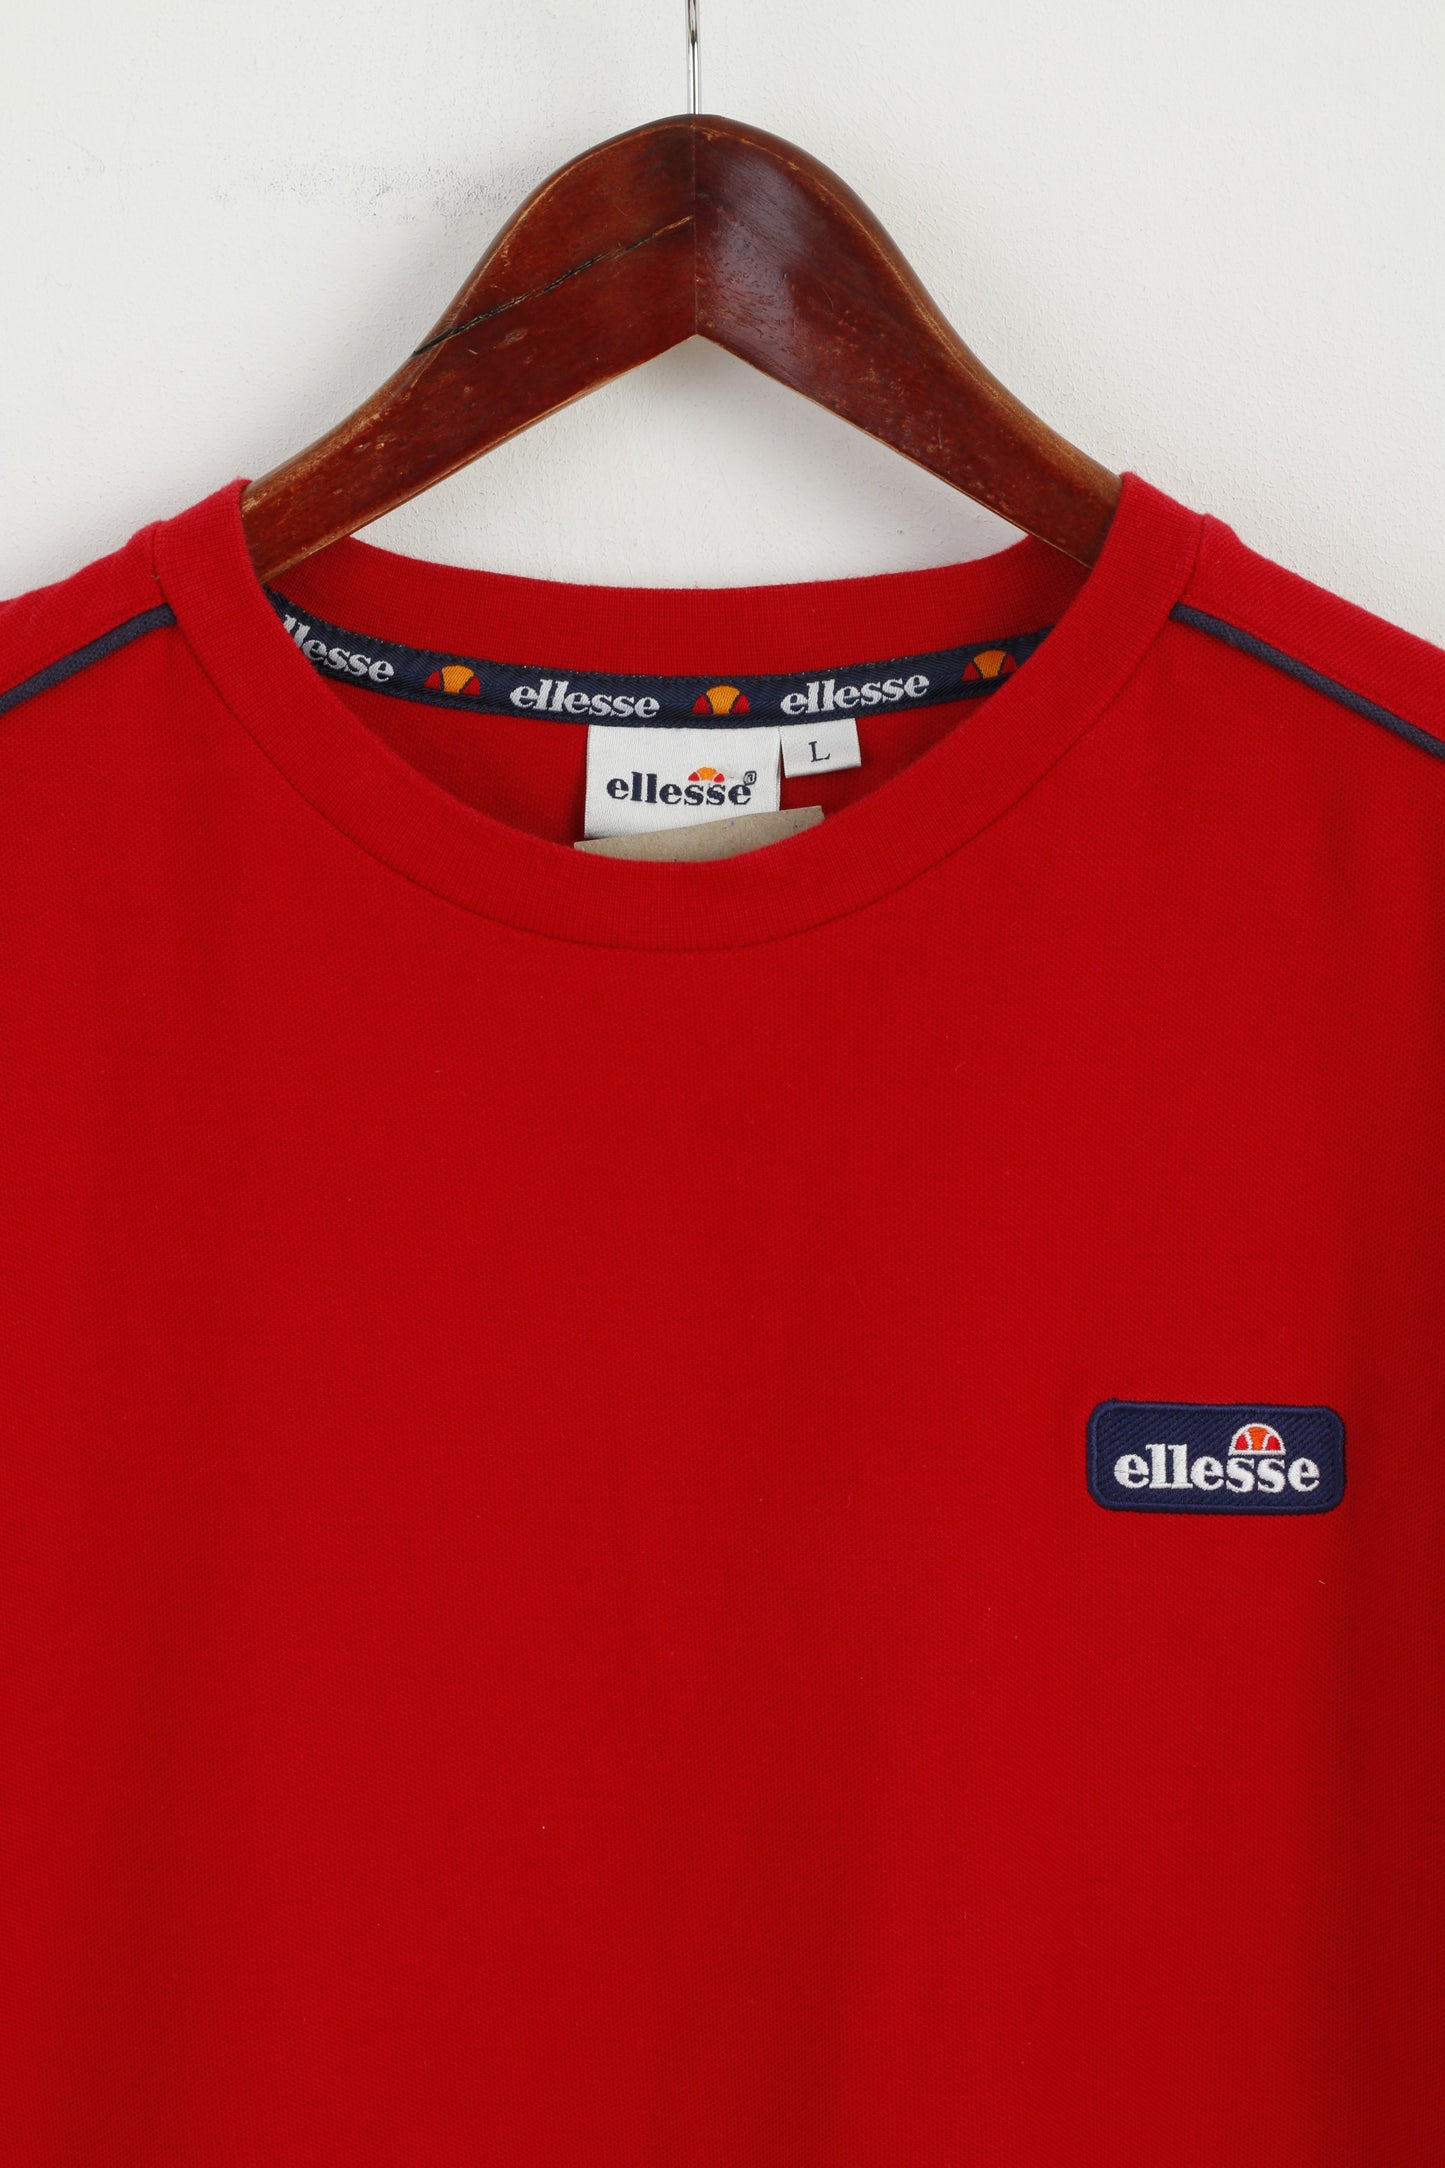 Ellesse Men L T- Shirt Red 100% Cotton Crew Neck Classic Plain Basic Top